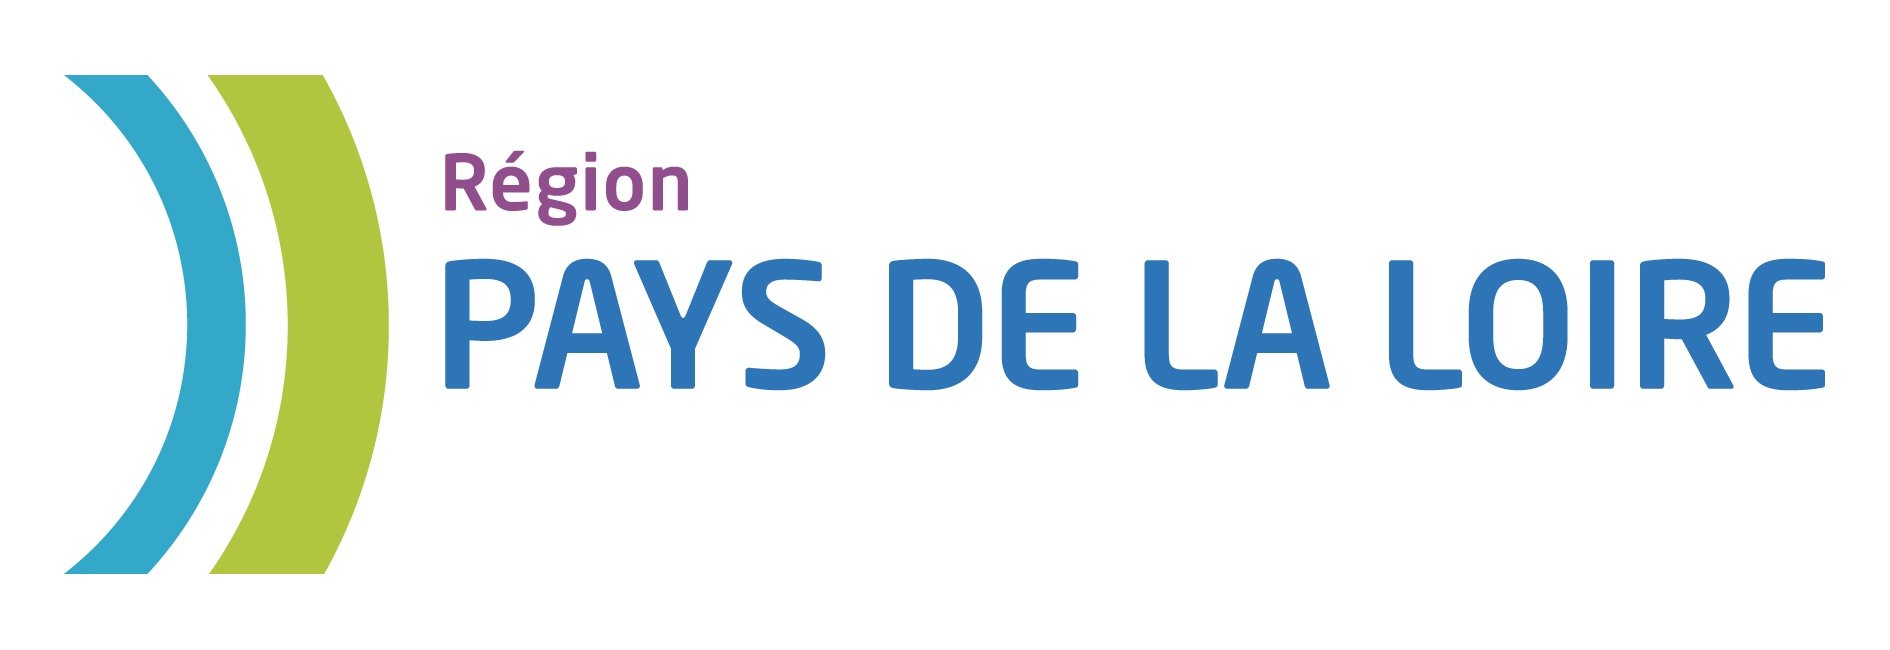 Logo Pays de la Loire région